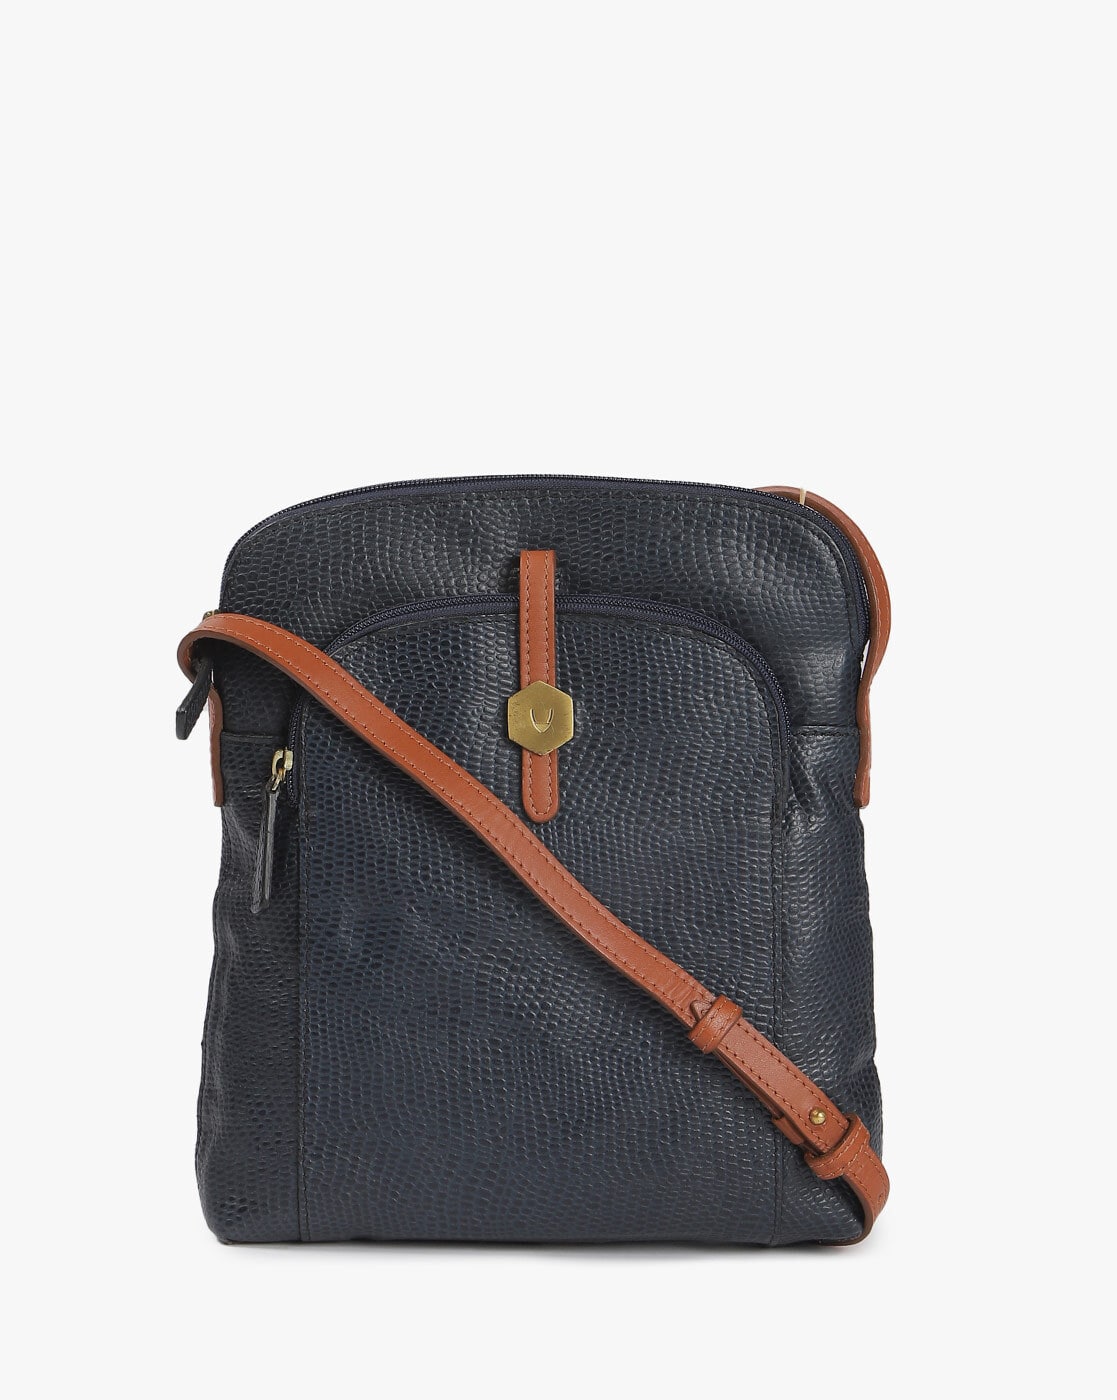 Hidesign Sling and Cross bags : Buy Hidesign Brown Sling Bag Online